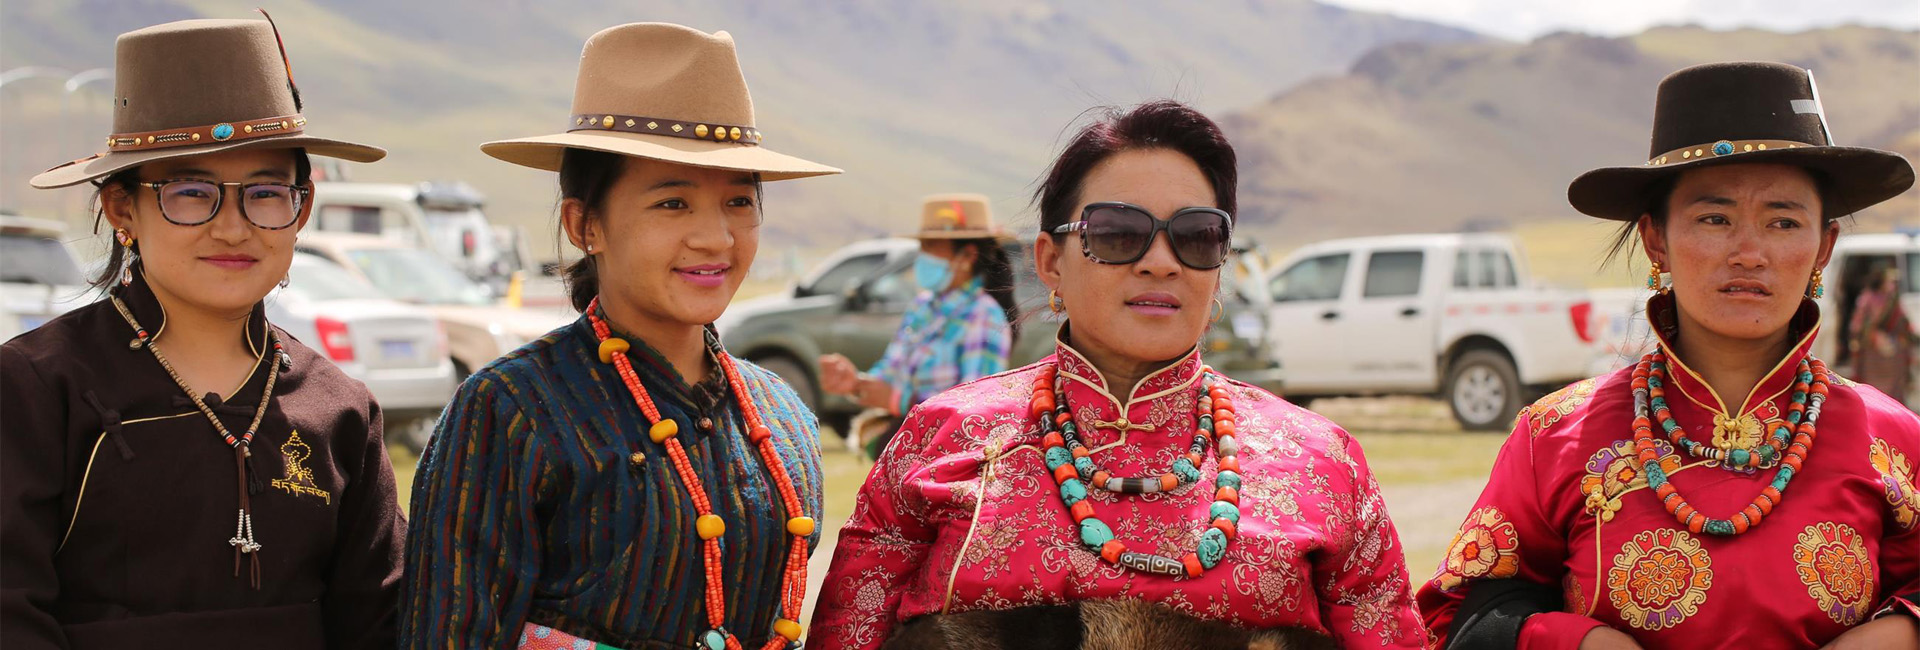 Tibet Culture Festival Tour